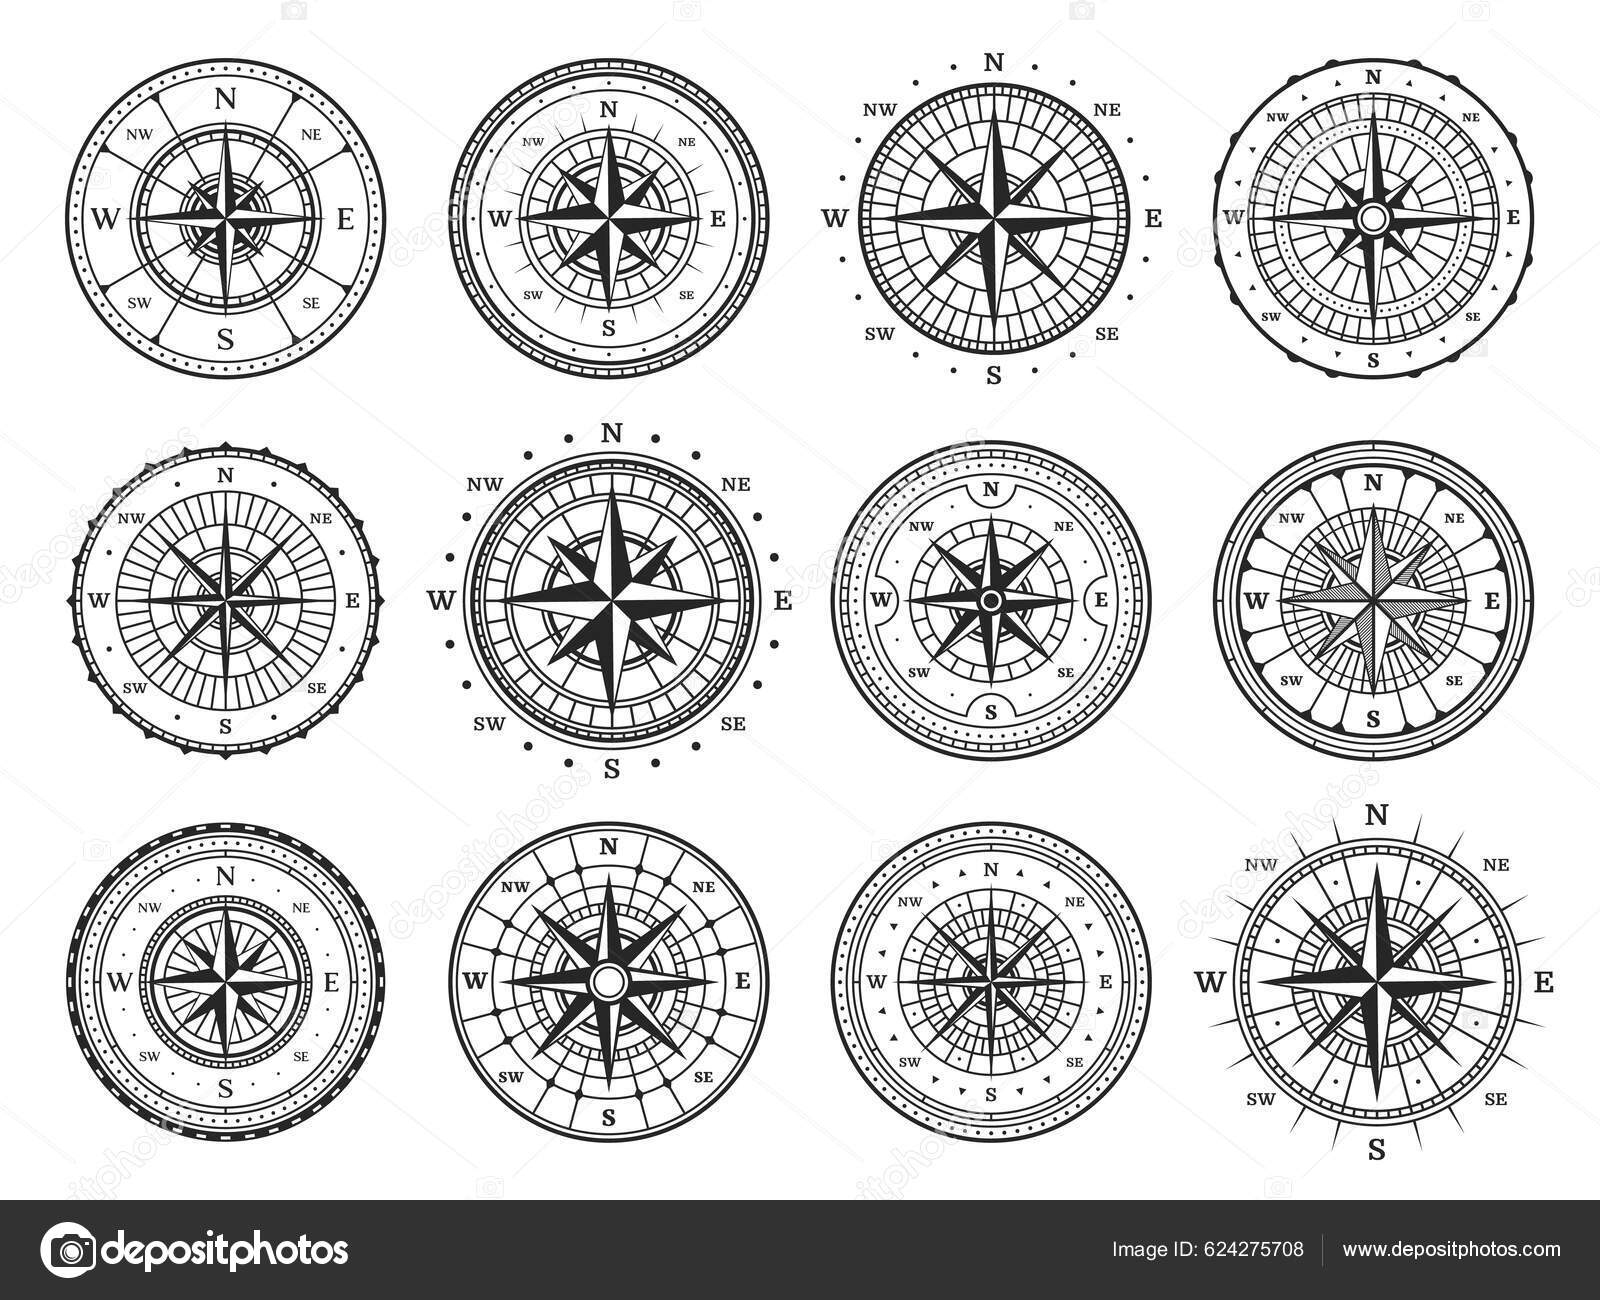 Boussole De Navigation Marin Symbole De Voyage Nautique